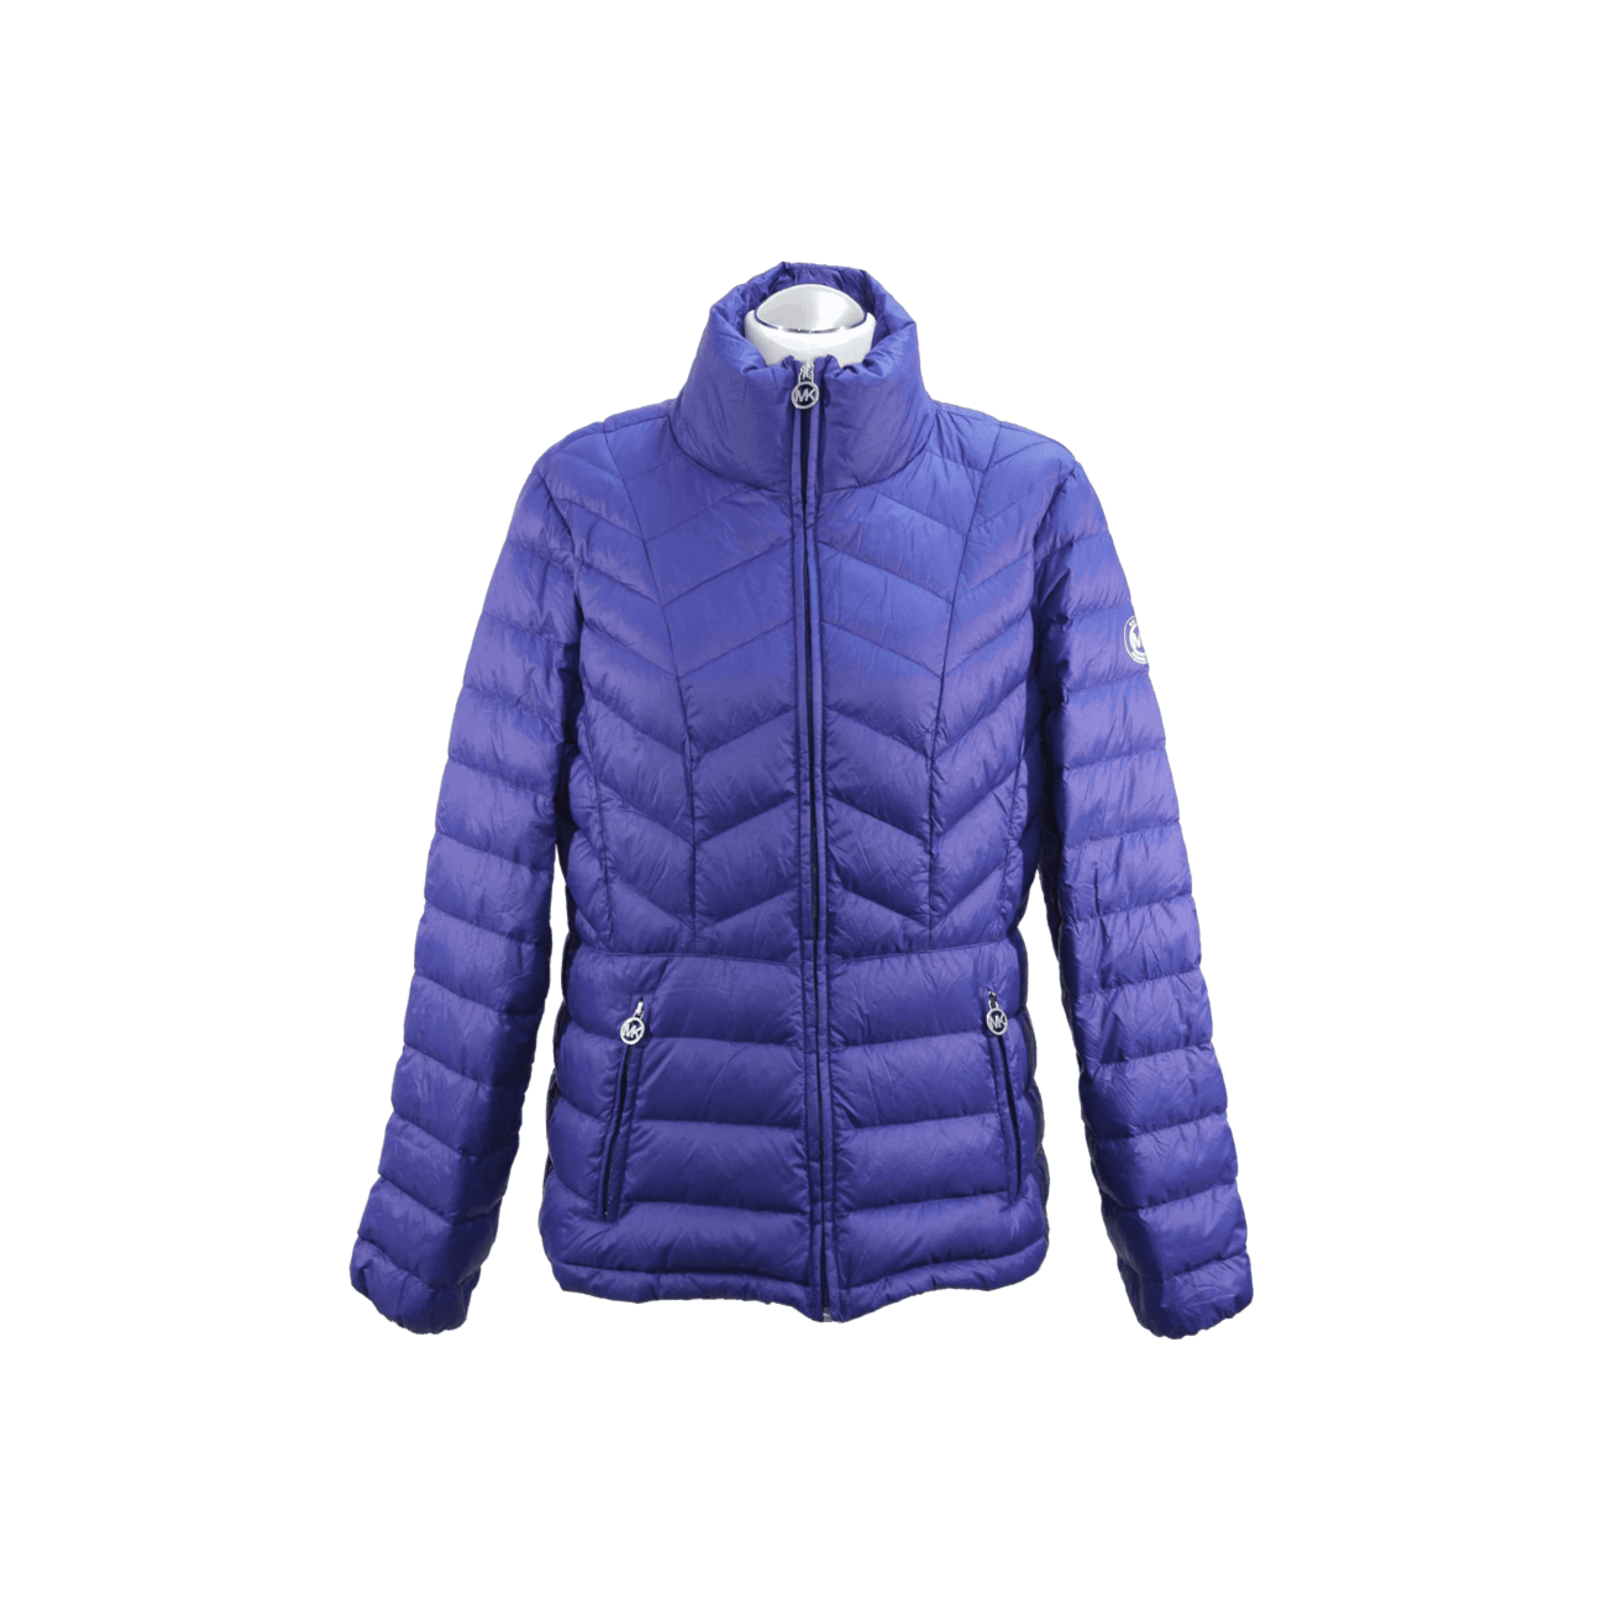 MICHAEL KORS Women's Jacke/Mantel in Blau Size: DE 40